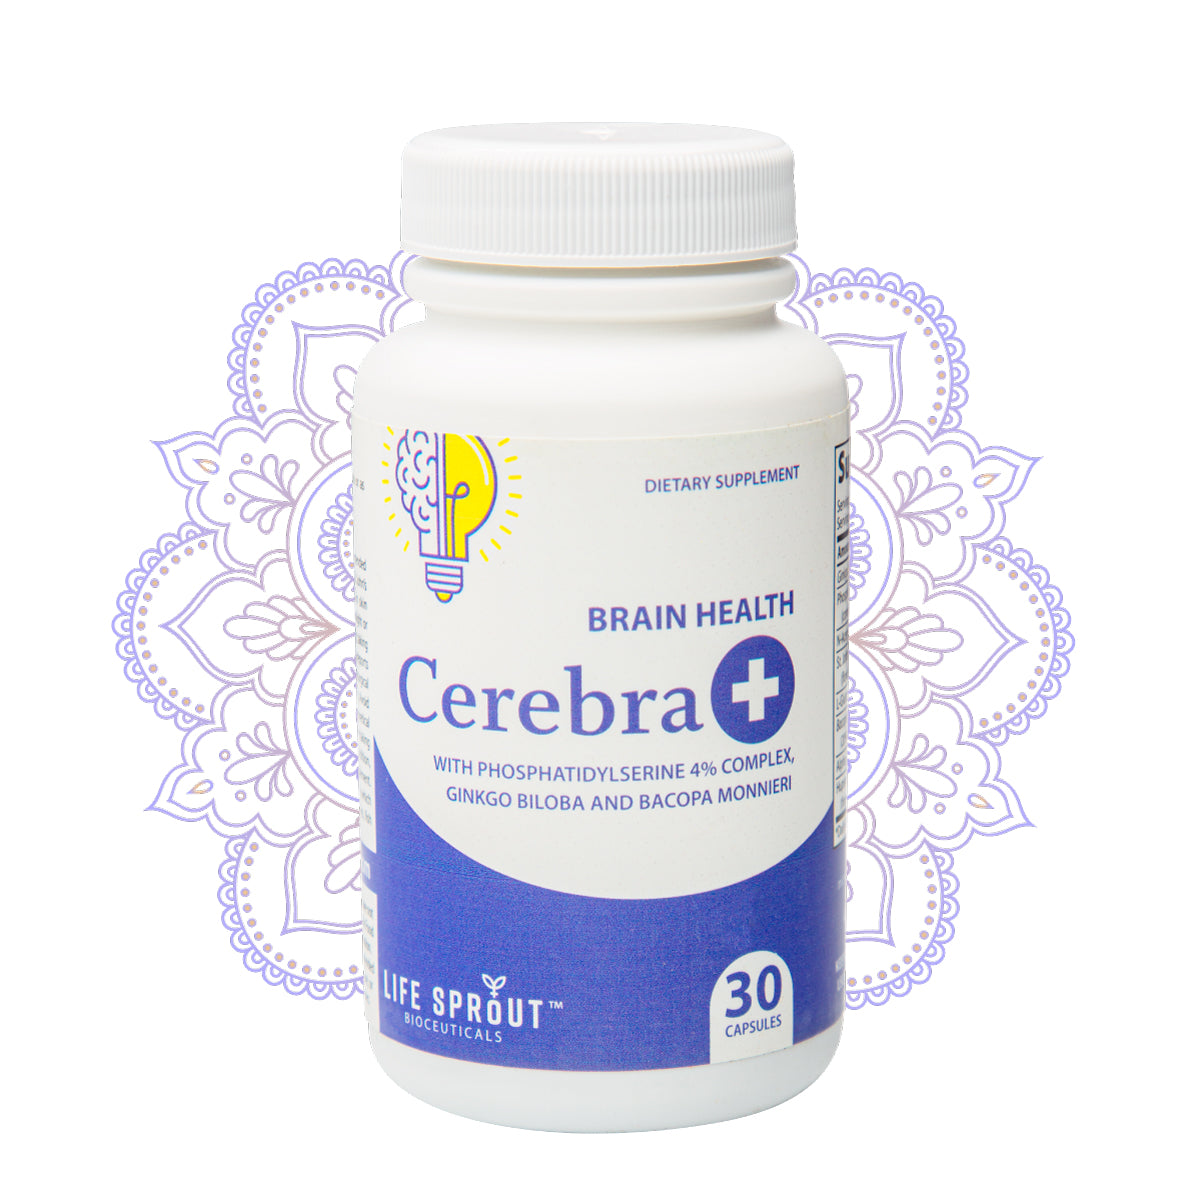 Cerebra +, Brain Health Formula